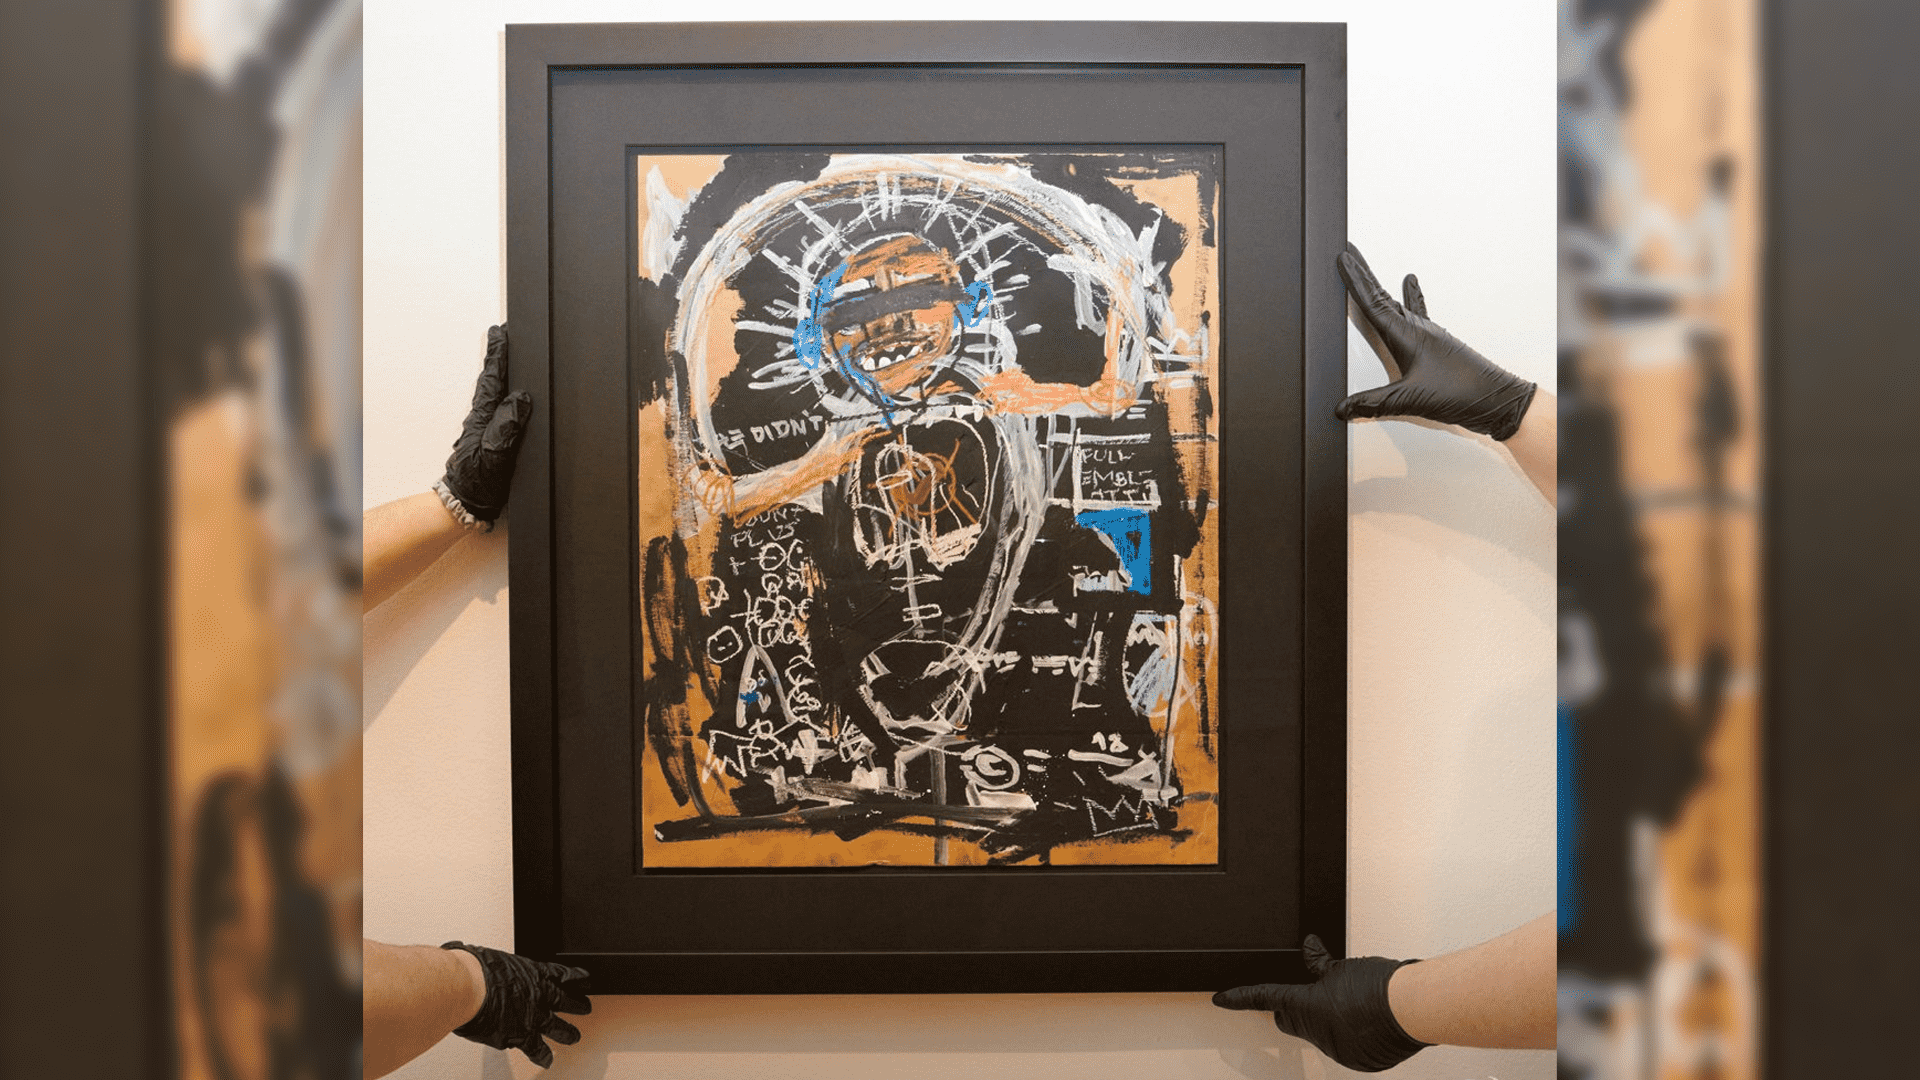 El FBI incauta toda la exposición de Basquiat debido a una fuente